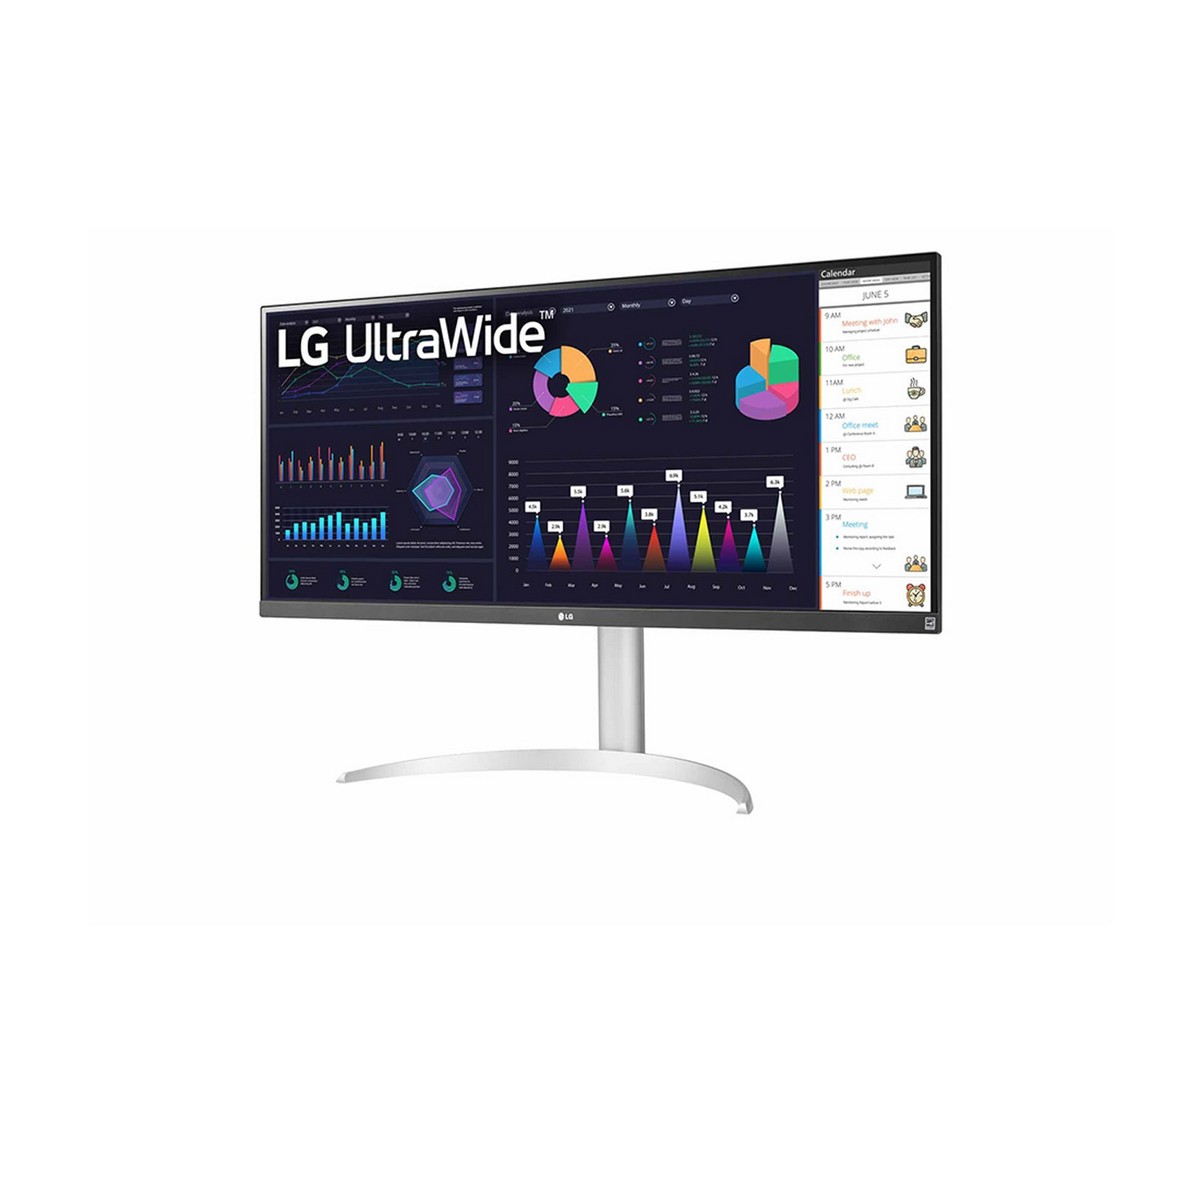 Monitor LG 32″ Panel IPS Full HD 1080p 100Hz AMD FreeSync, HDMI, VGA –